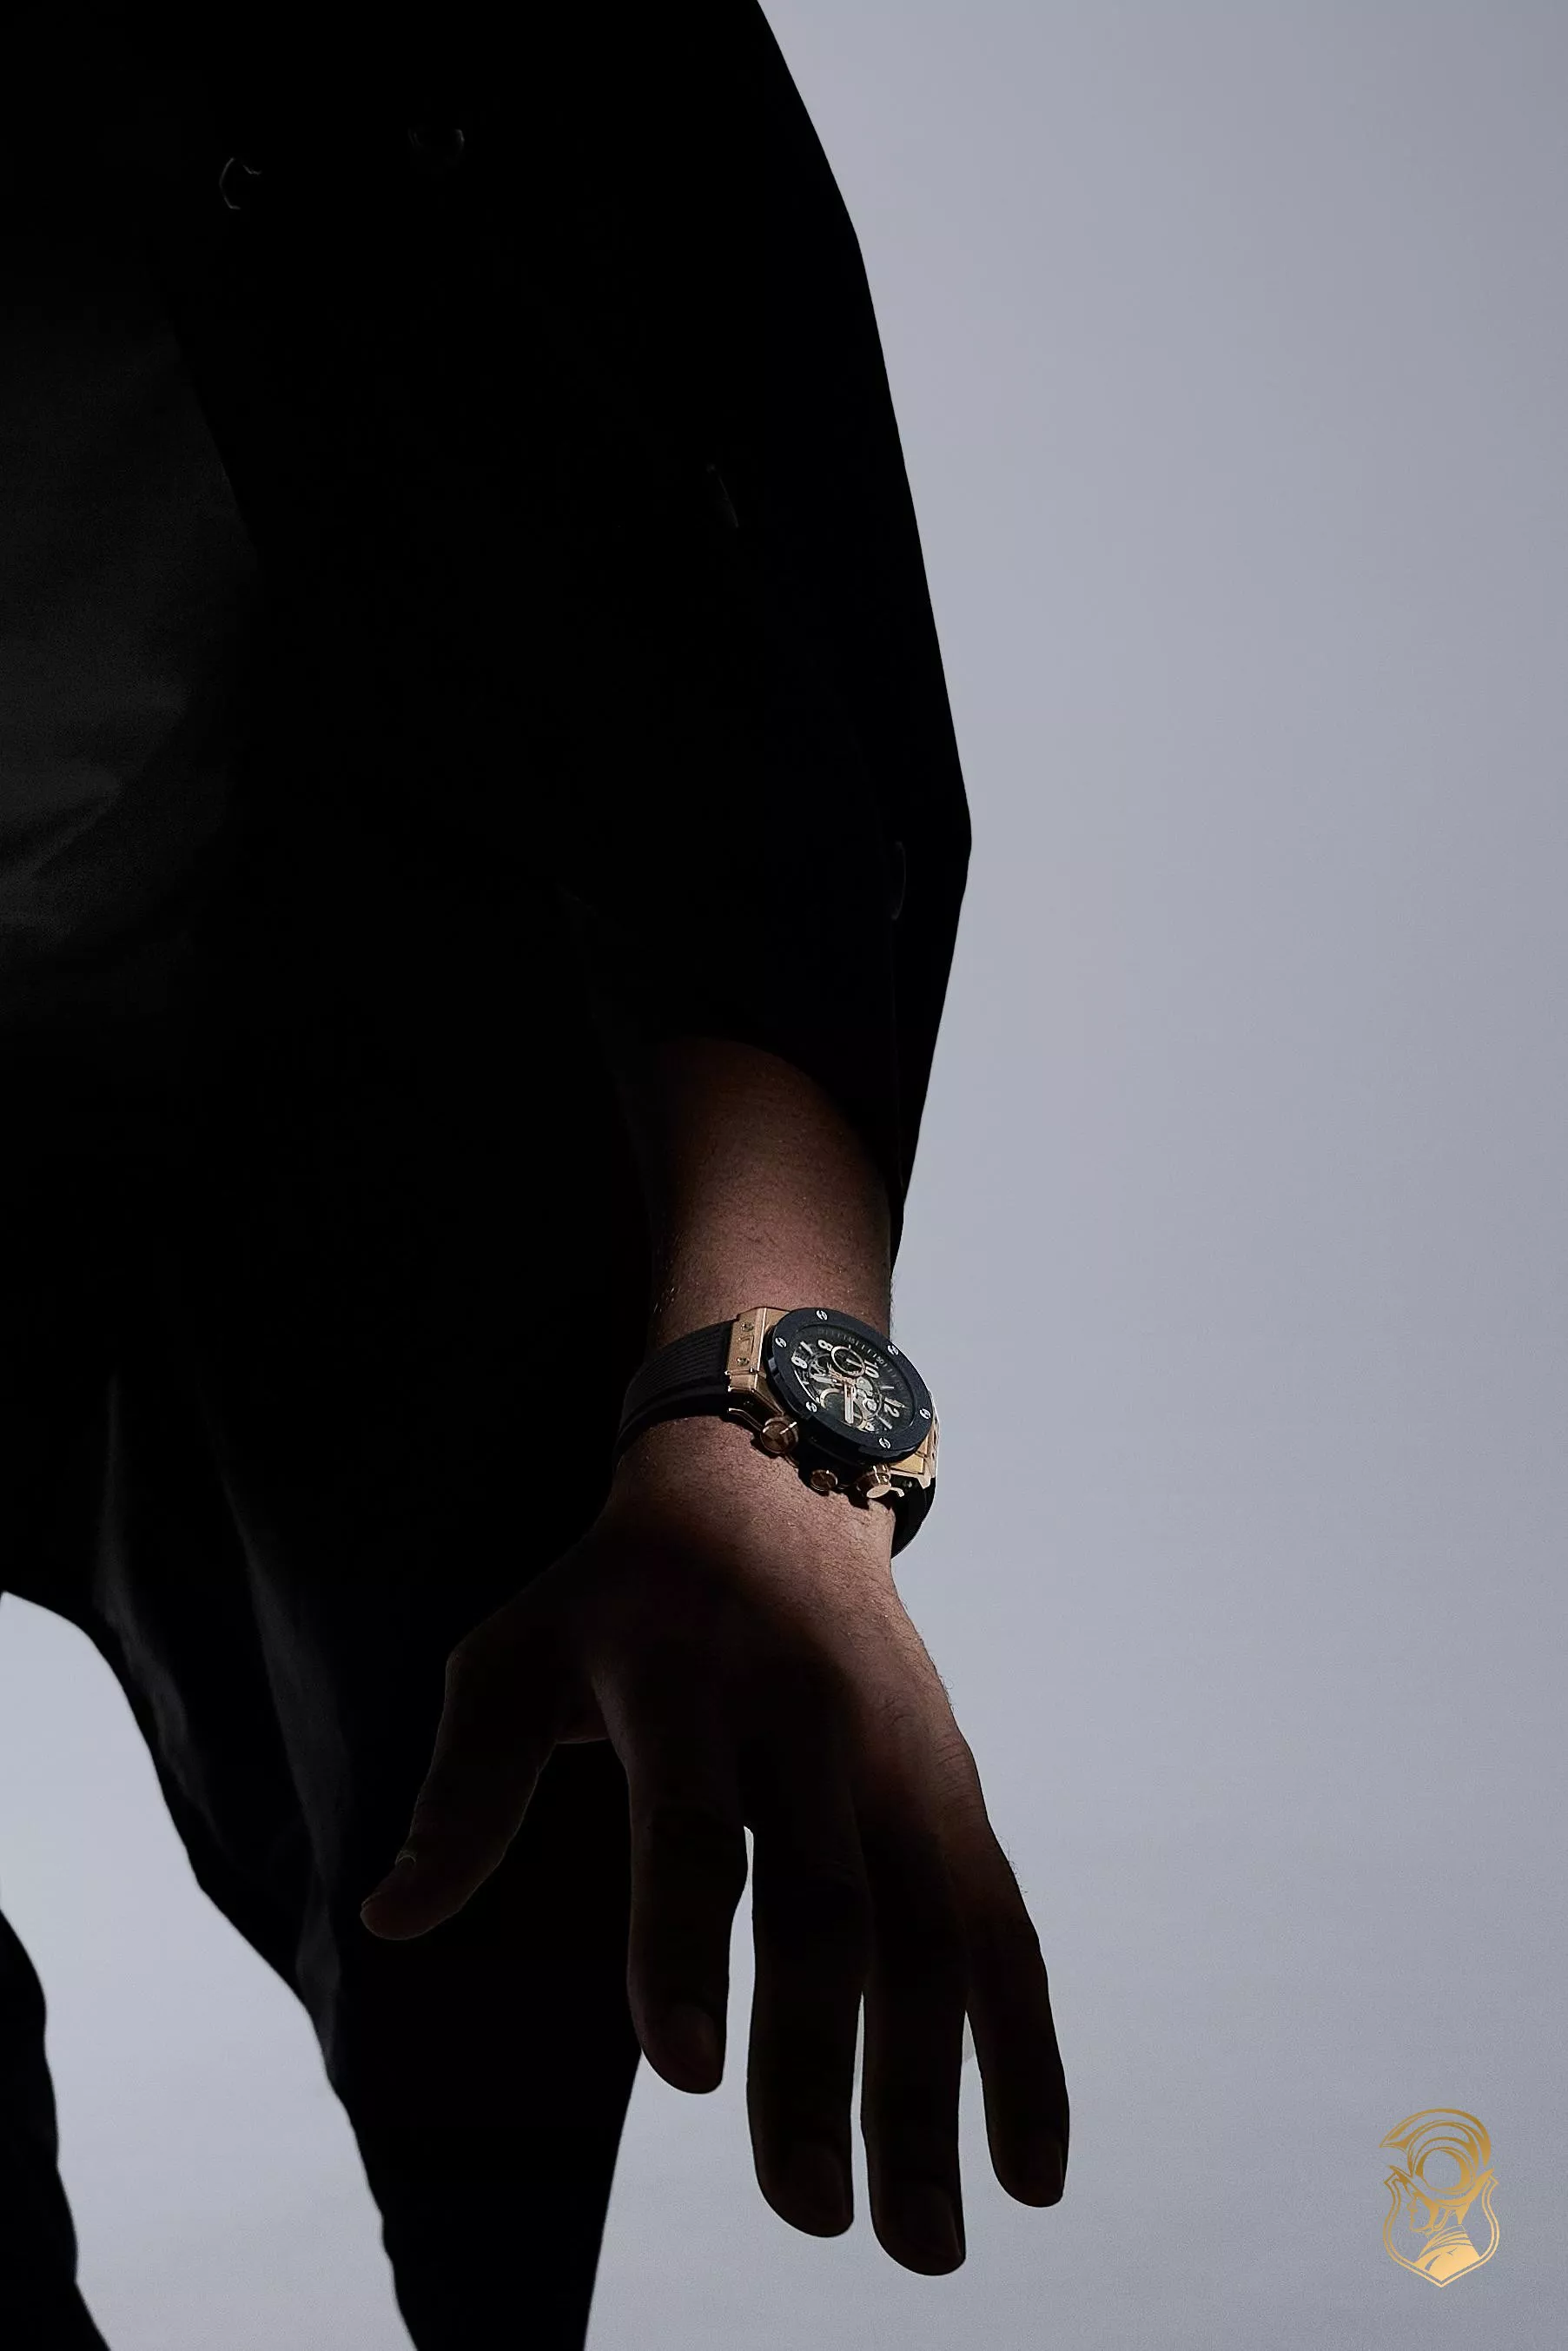 Hublot Bigbang Unico Watch 44mm